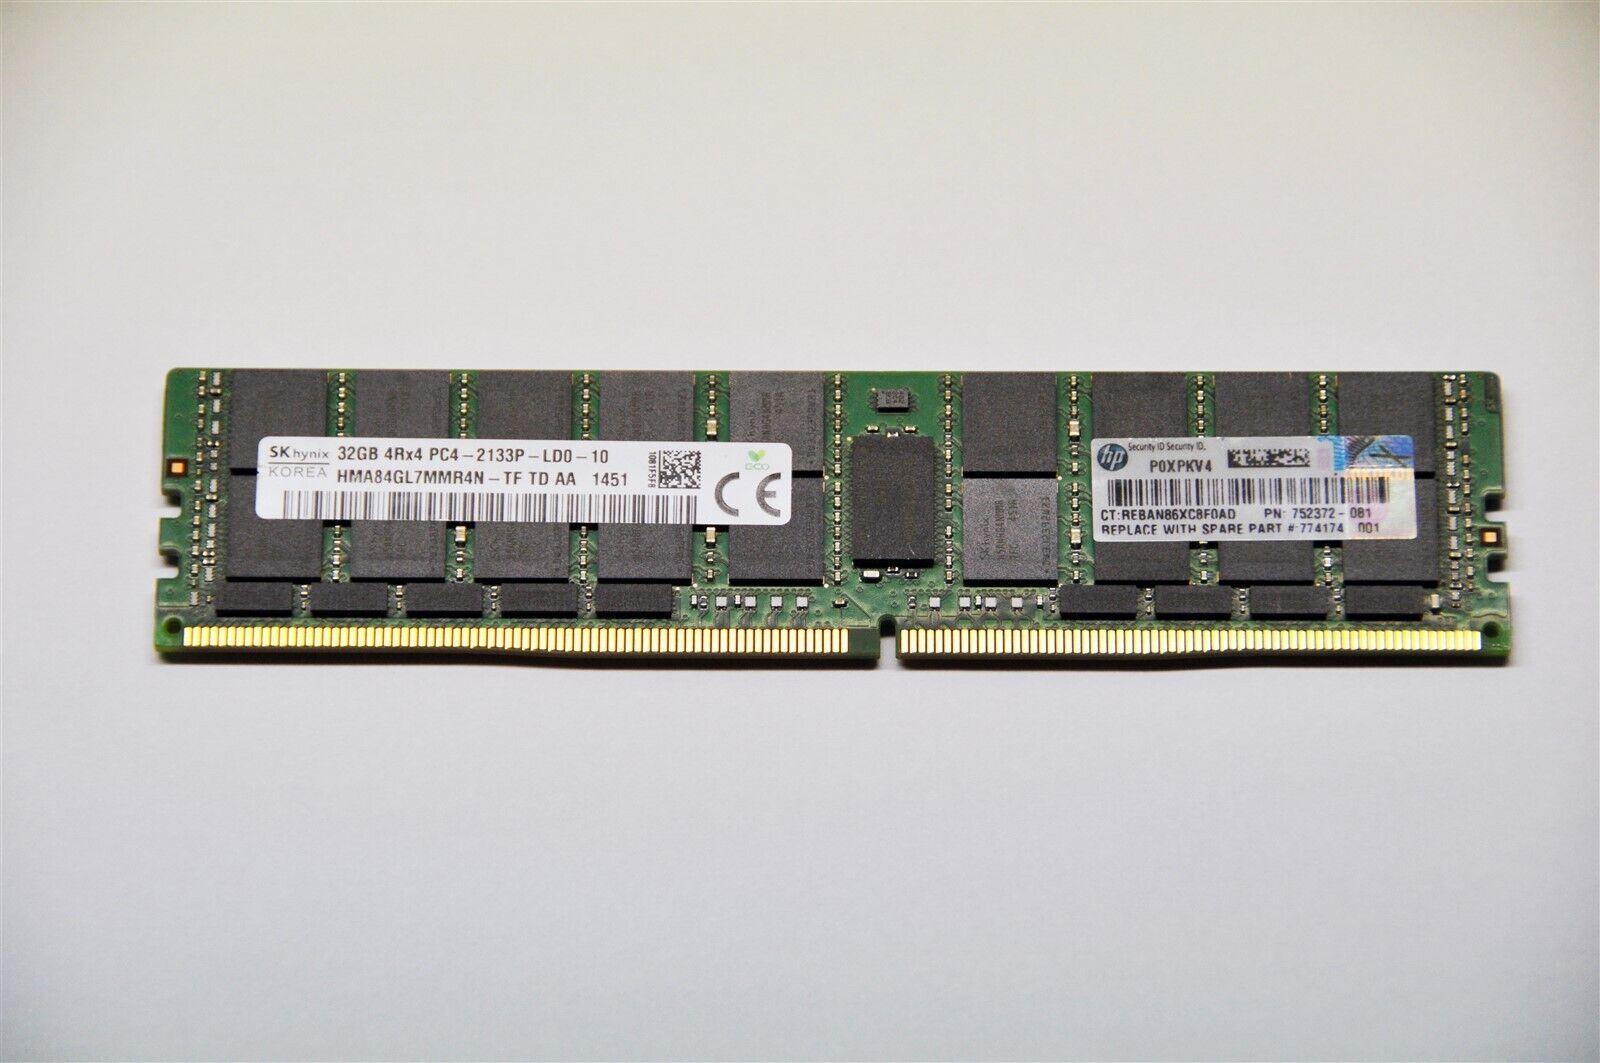 SK hynix DDR4 32GB Server RAM 2Rx4 PC4-2133P HMA84GL7MMR4N HP Part 752372